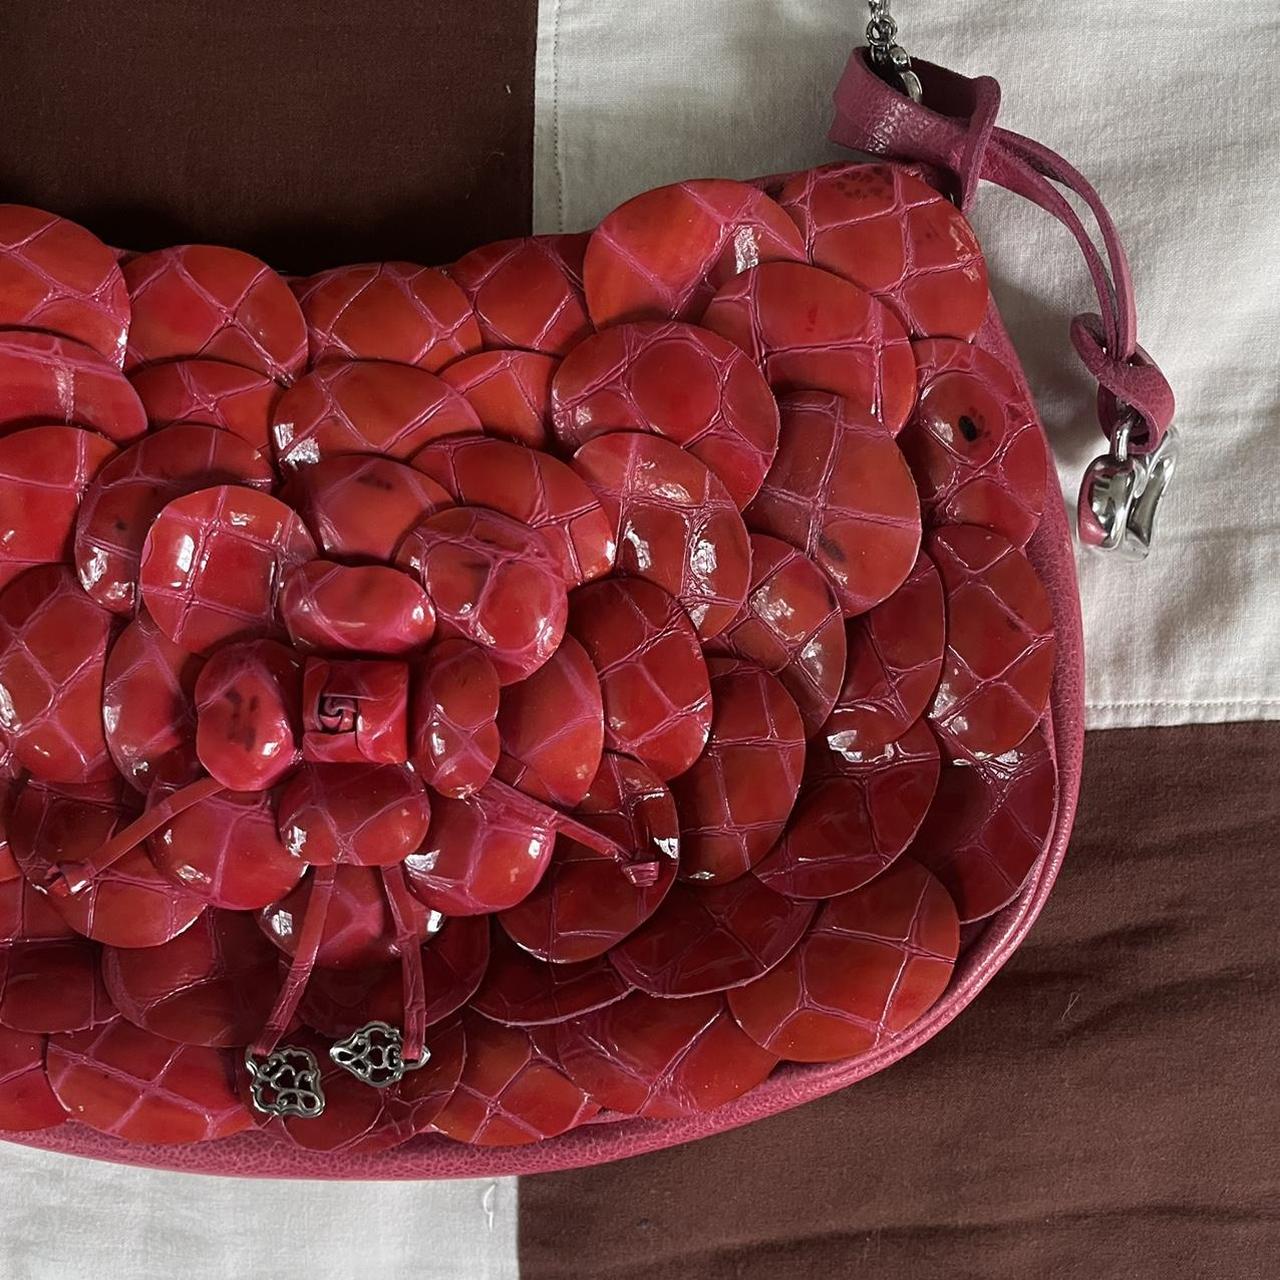 Vintage Brighton Purse Vintage Handbag Red Leather Handbag | Etsy | Brighton  purses, Red leather handbags, Vintage handbags